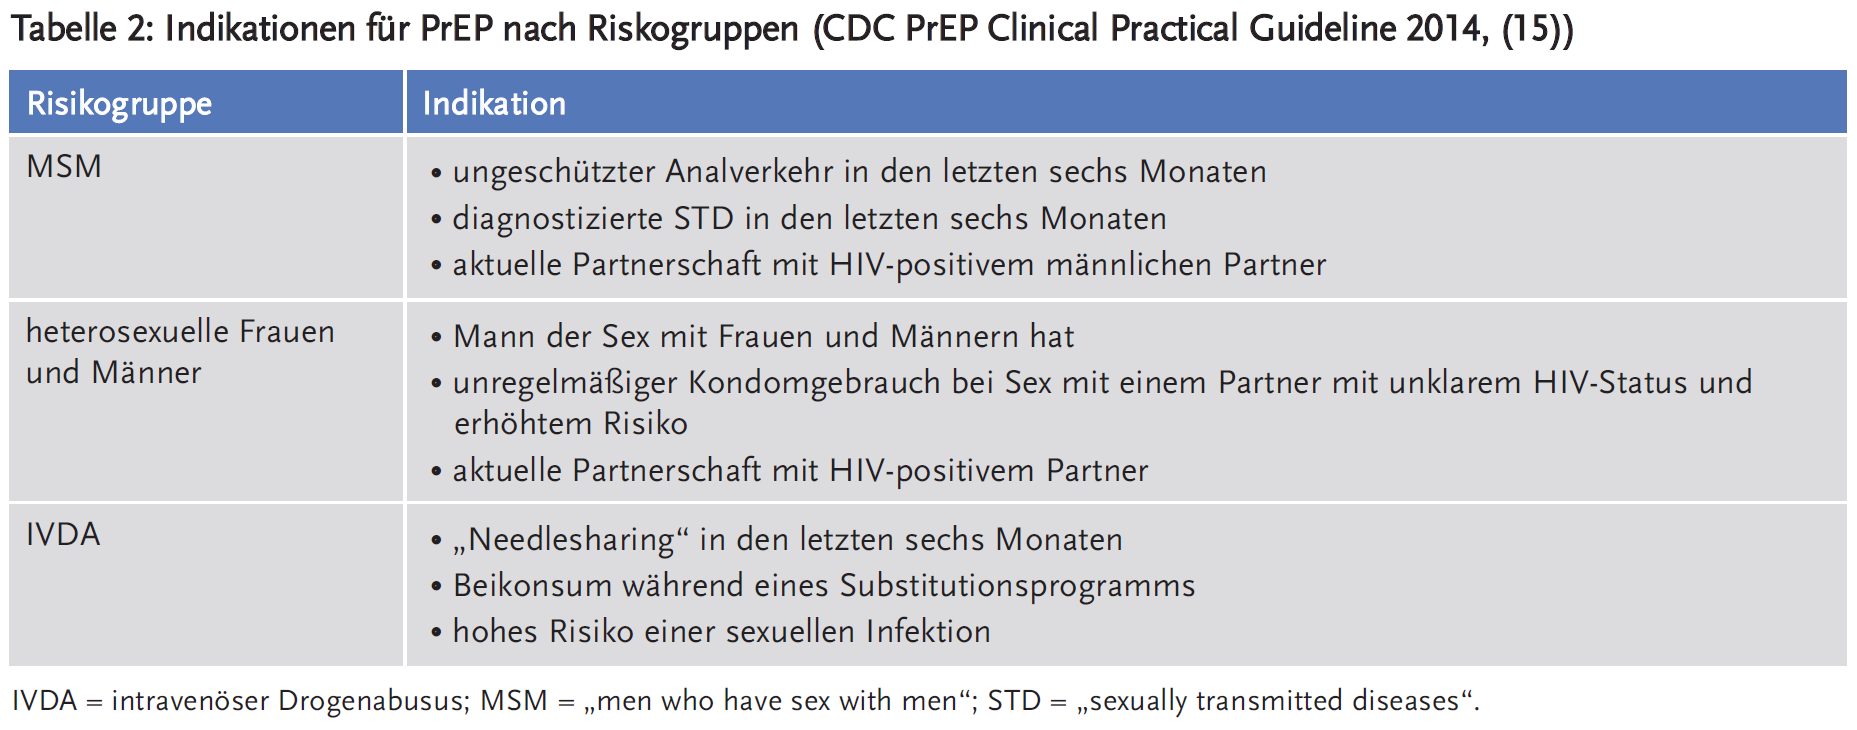 Tabelle 2: Indikationen für PrEP nach Riskogruppen (CDC PrEP Clinical Practical Guideline 2014, (15))